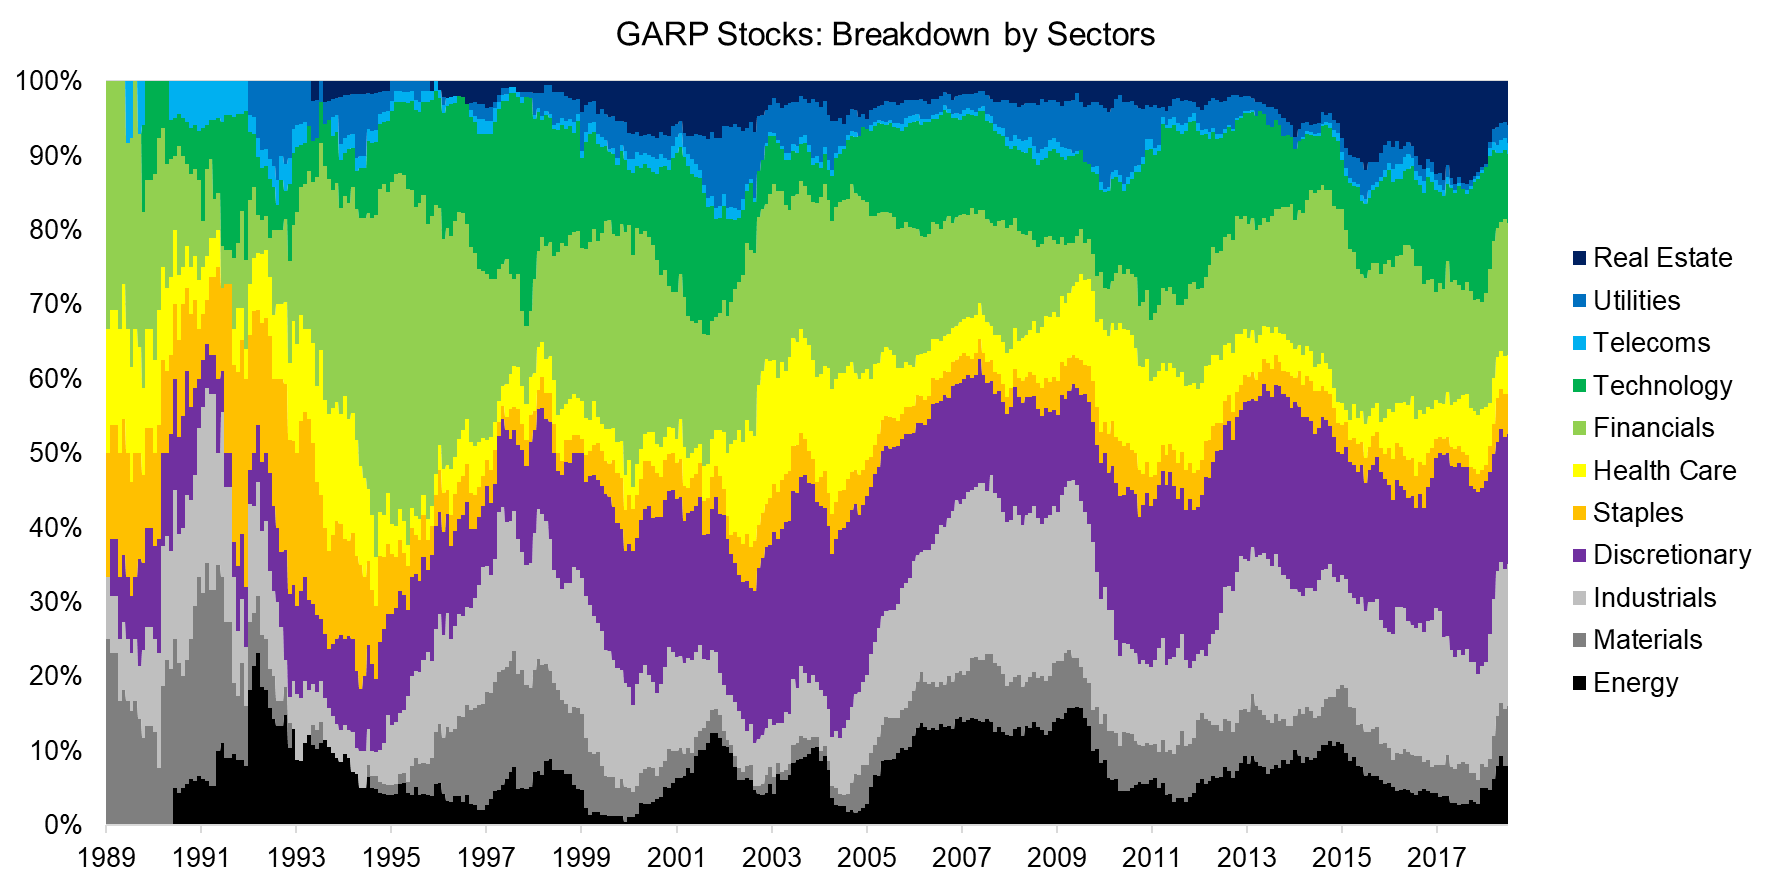 GARP Stocks Breakdown by Sectors